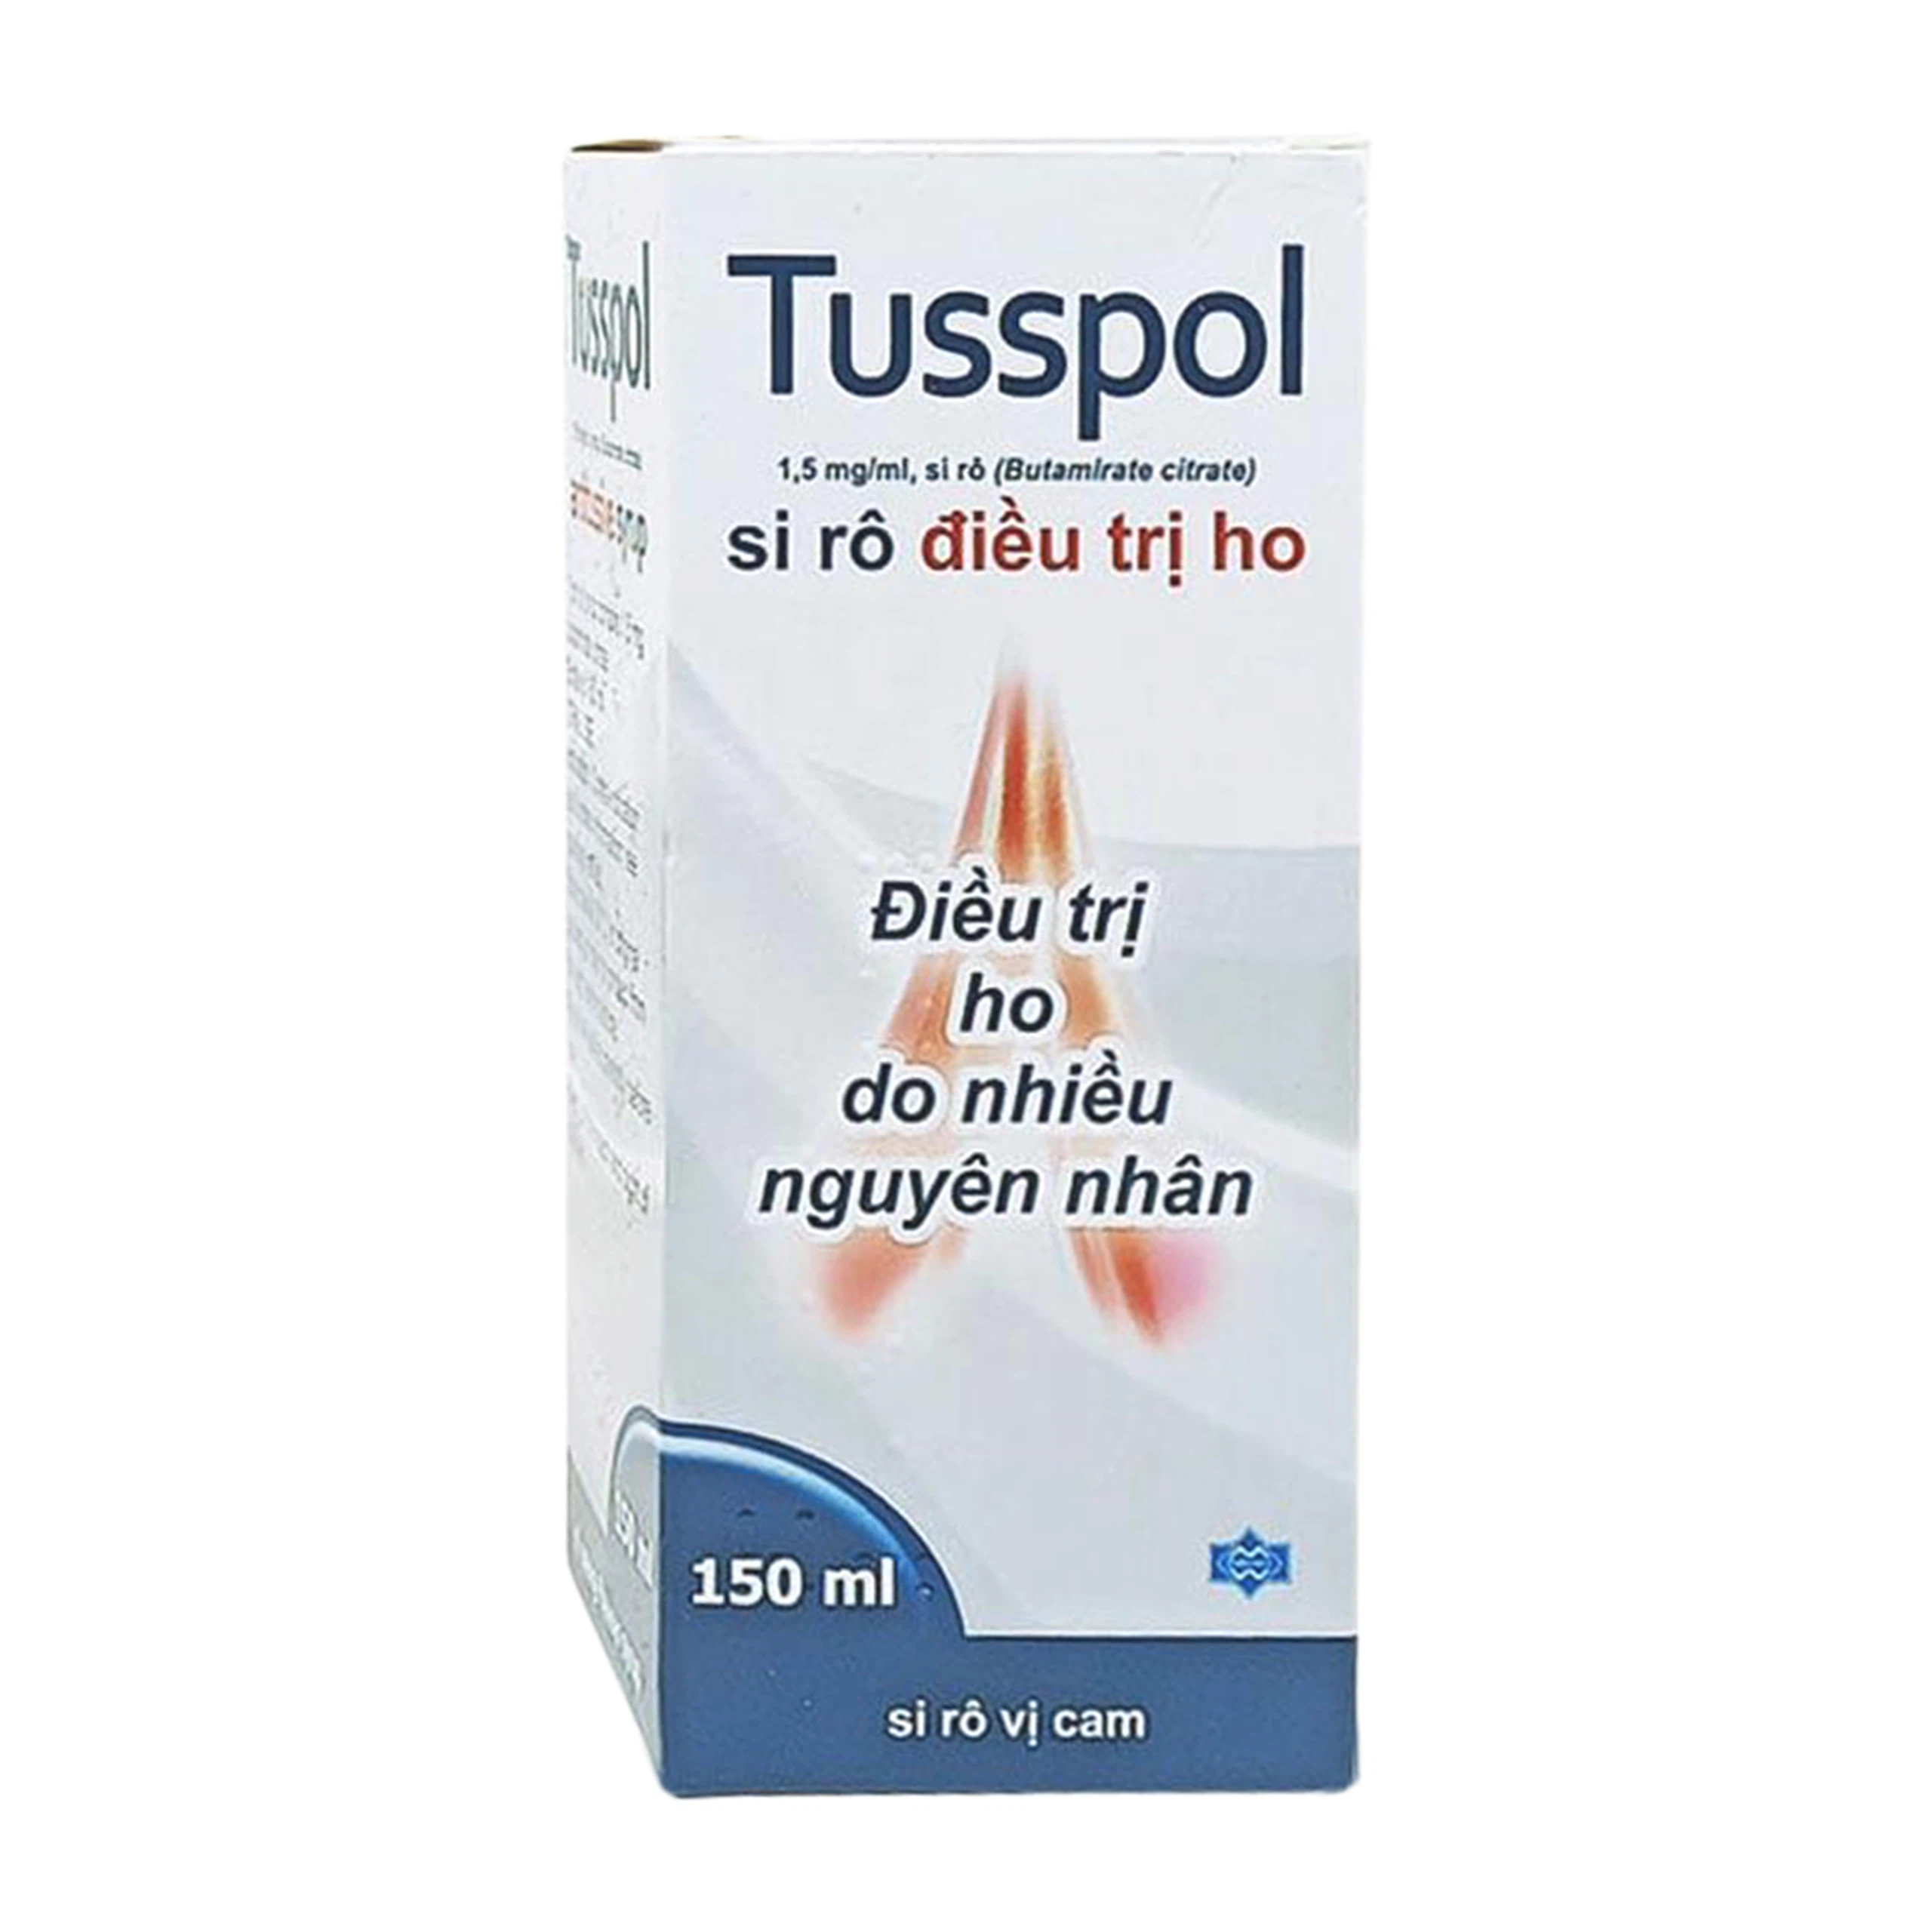 Siro Tusspol 150ml Polfarmex vị cam - điều trị ho do nhiều nguyên nhân